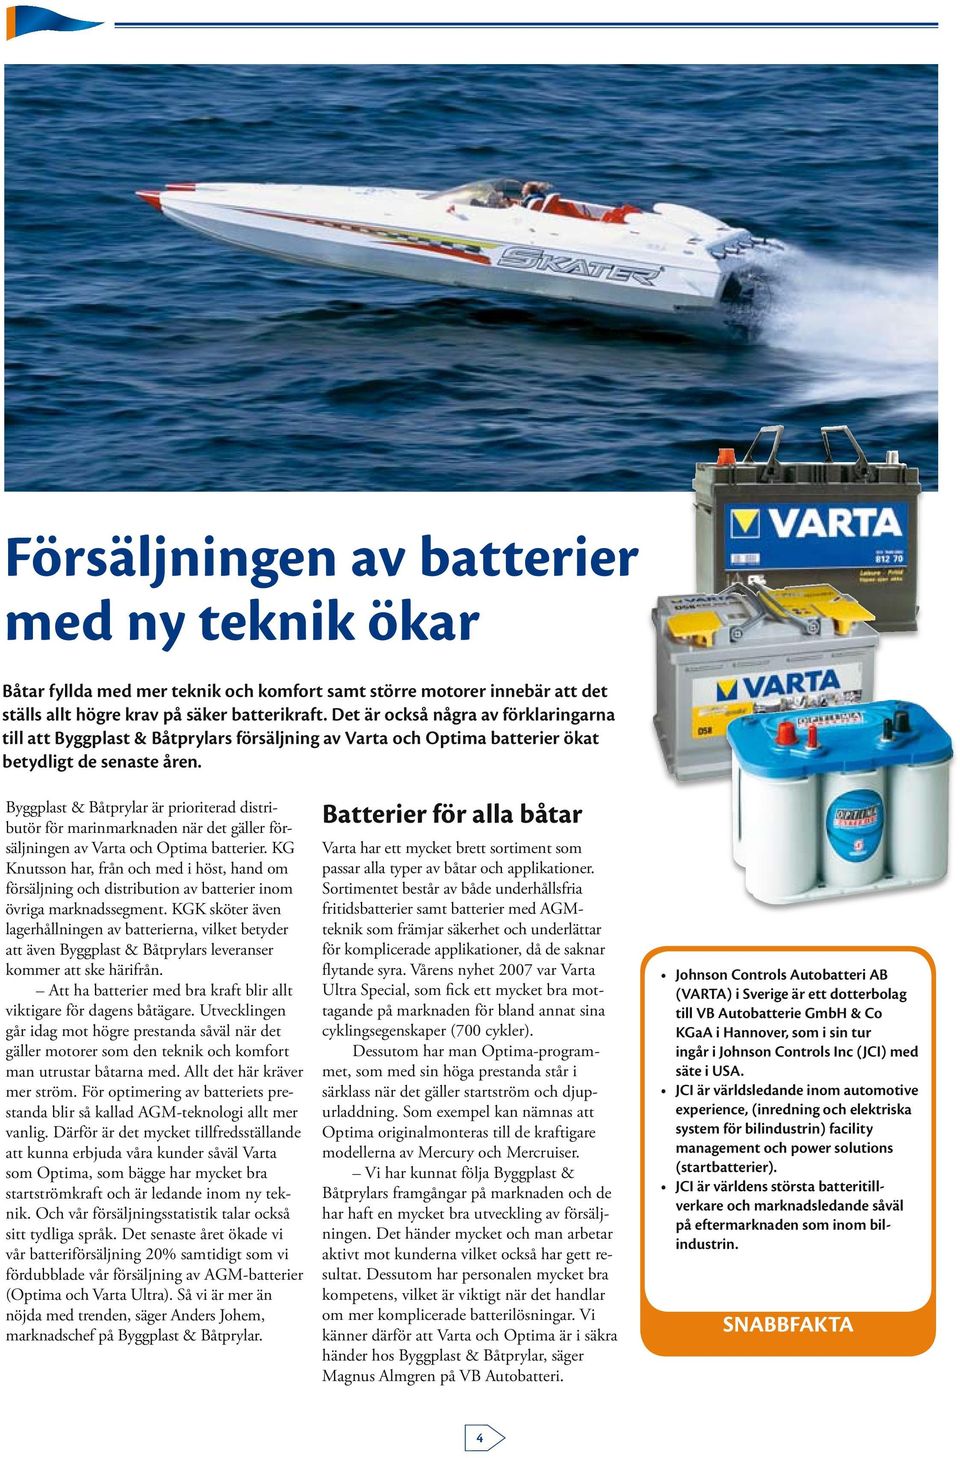 Byggplast & Båtprylar är prioriterad distributör för marinmarknaden när det gäller försäljningen av Varta och Optima batterier.